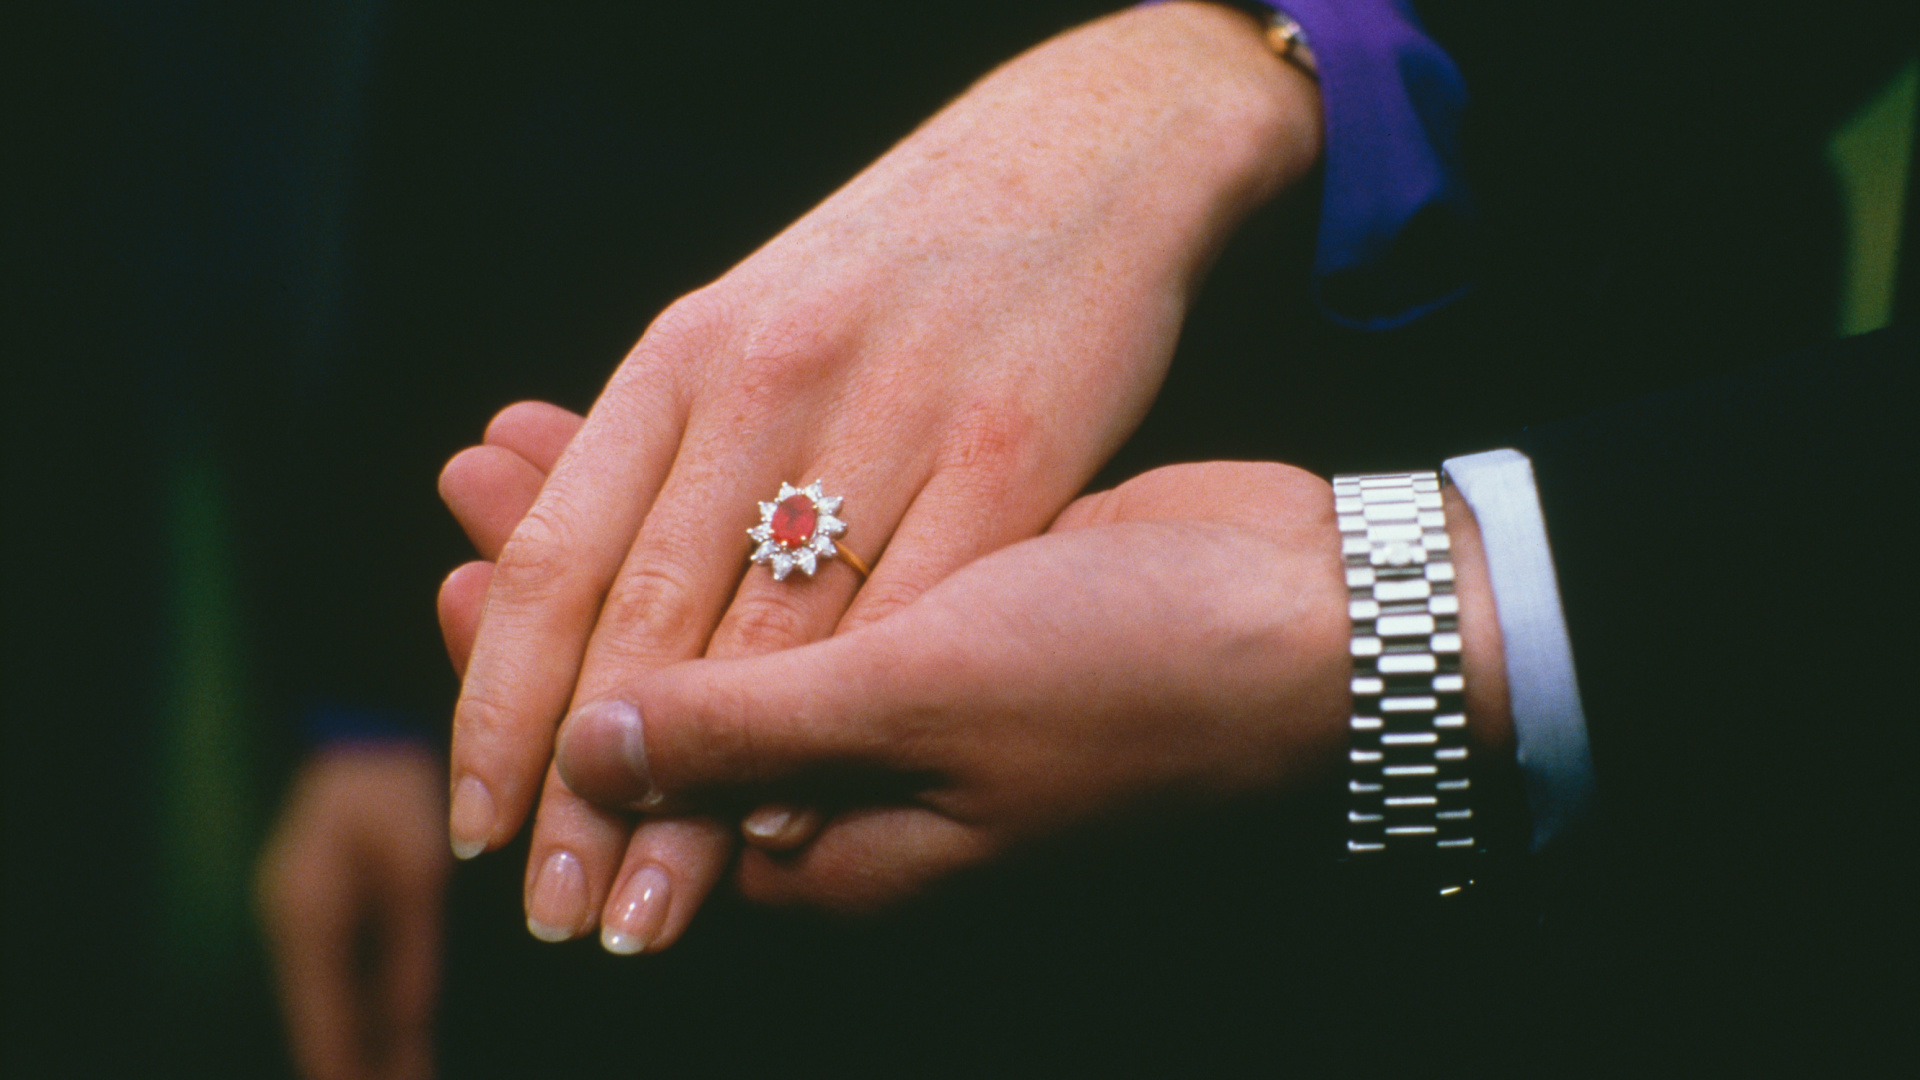 <p>El impresionante y colorido anillo de Sarah Ferguson presenta un enorme rubí birmano rodeado de diez diamantes brillantes. Las piedras forman un patrón de flores, dando nombre al estilo: un anillo de racimo. Las gemas preciosas están dispuestas en una banda de oro dorado y fueron elaboradas por los mismos joyeros que hicieron el icónico anillo que el príncipe Carlos le dio a la princesa Diana.</p>